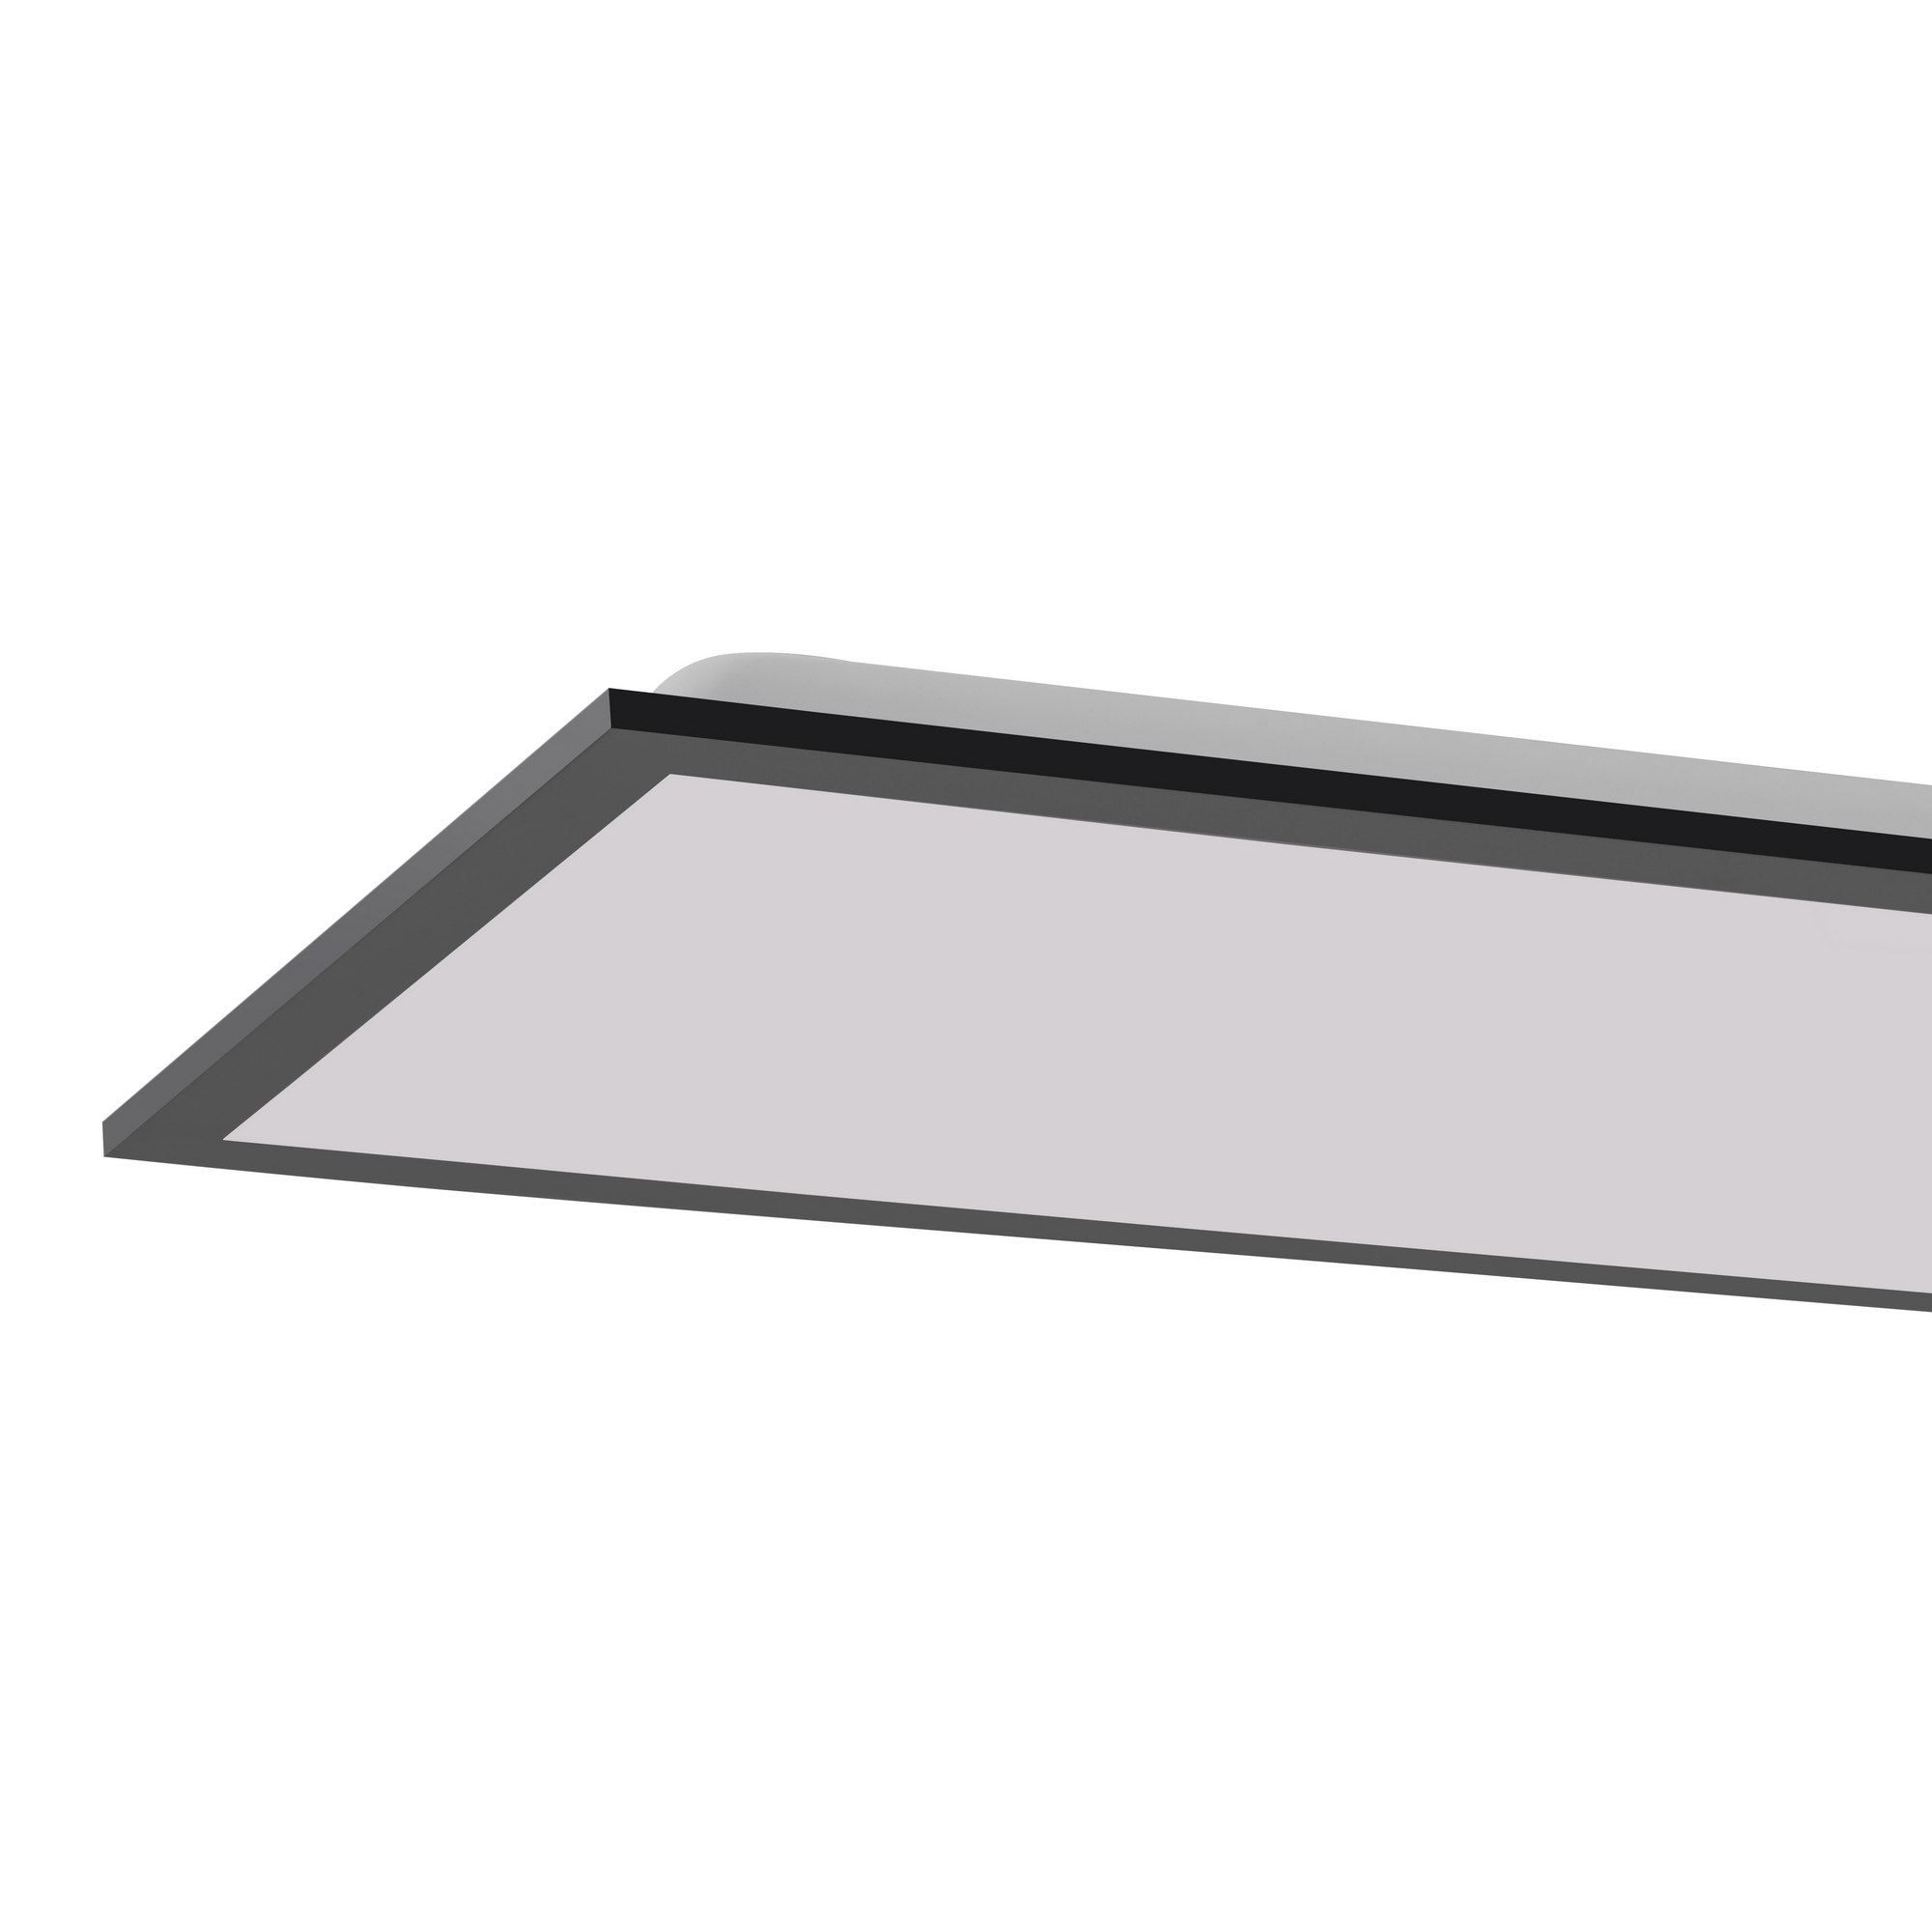 Deckenleuchte 'FLAT' schwarz/weiß 29,5 x 6,6 x 119,5 cm, inkl. IR-Fernbedienung + product picture